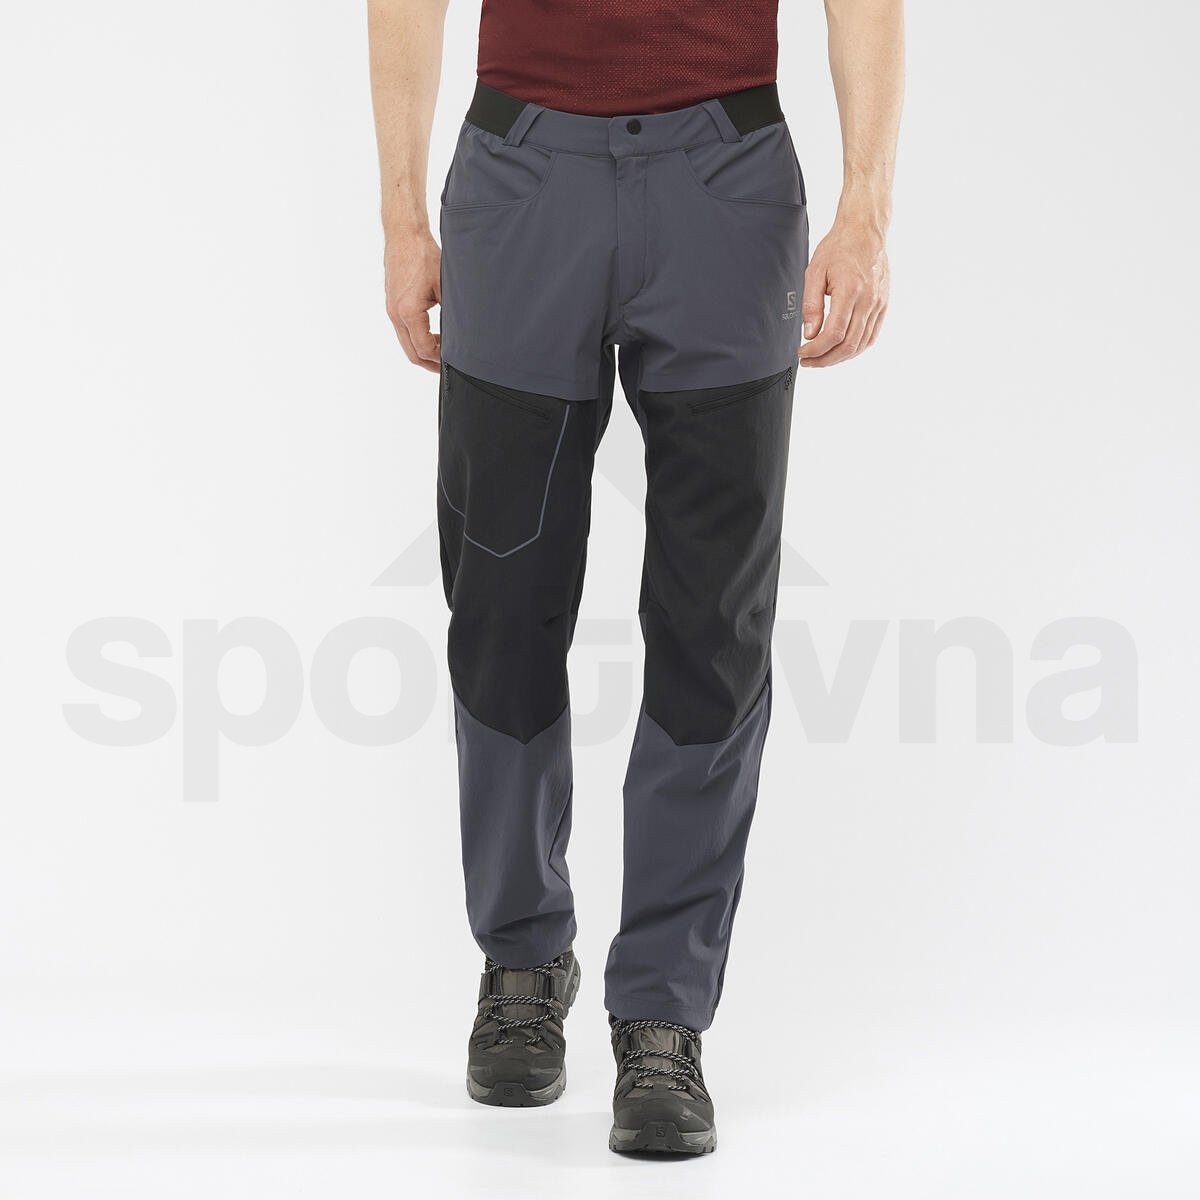 Kalhoty Salomon WAYFARER SECURE M - šedá/černá (standardní délka)